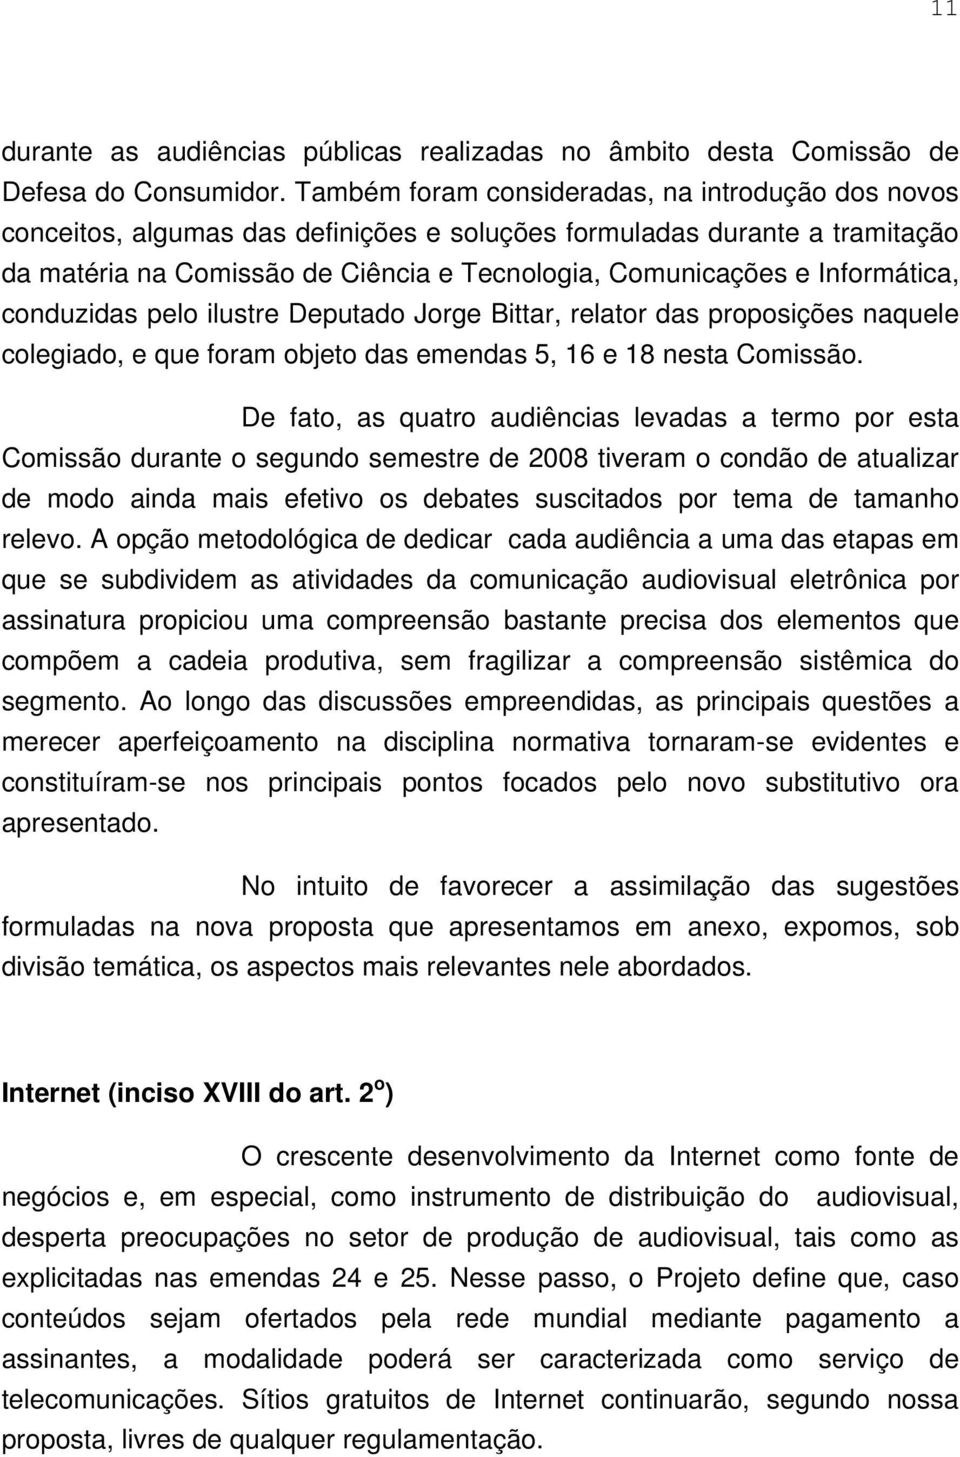 Informática, conduzidas pelo ilustre Deputado Jorge Bittar, relator das proposições naquele colegiado, e que foram objeto das emendas 5, 16 e 18 nesta Comissão.